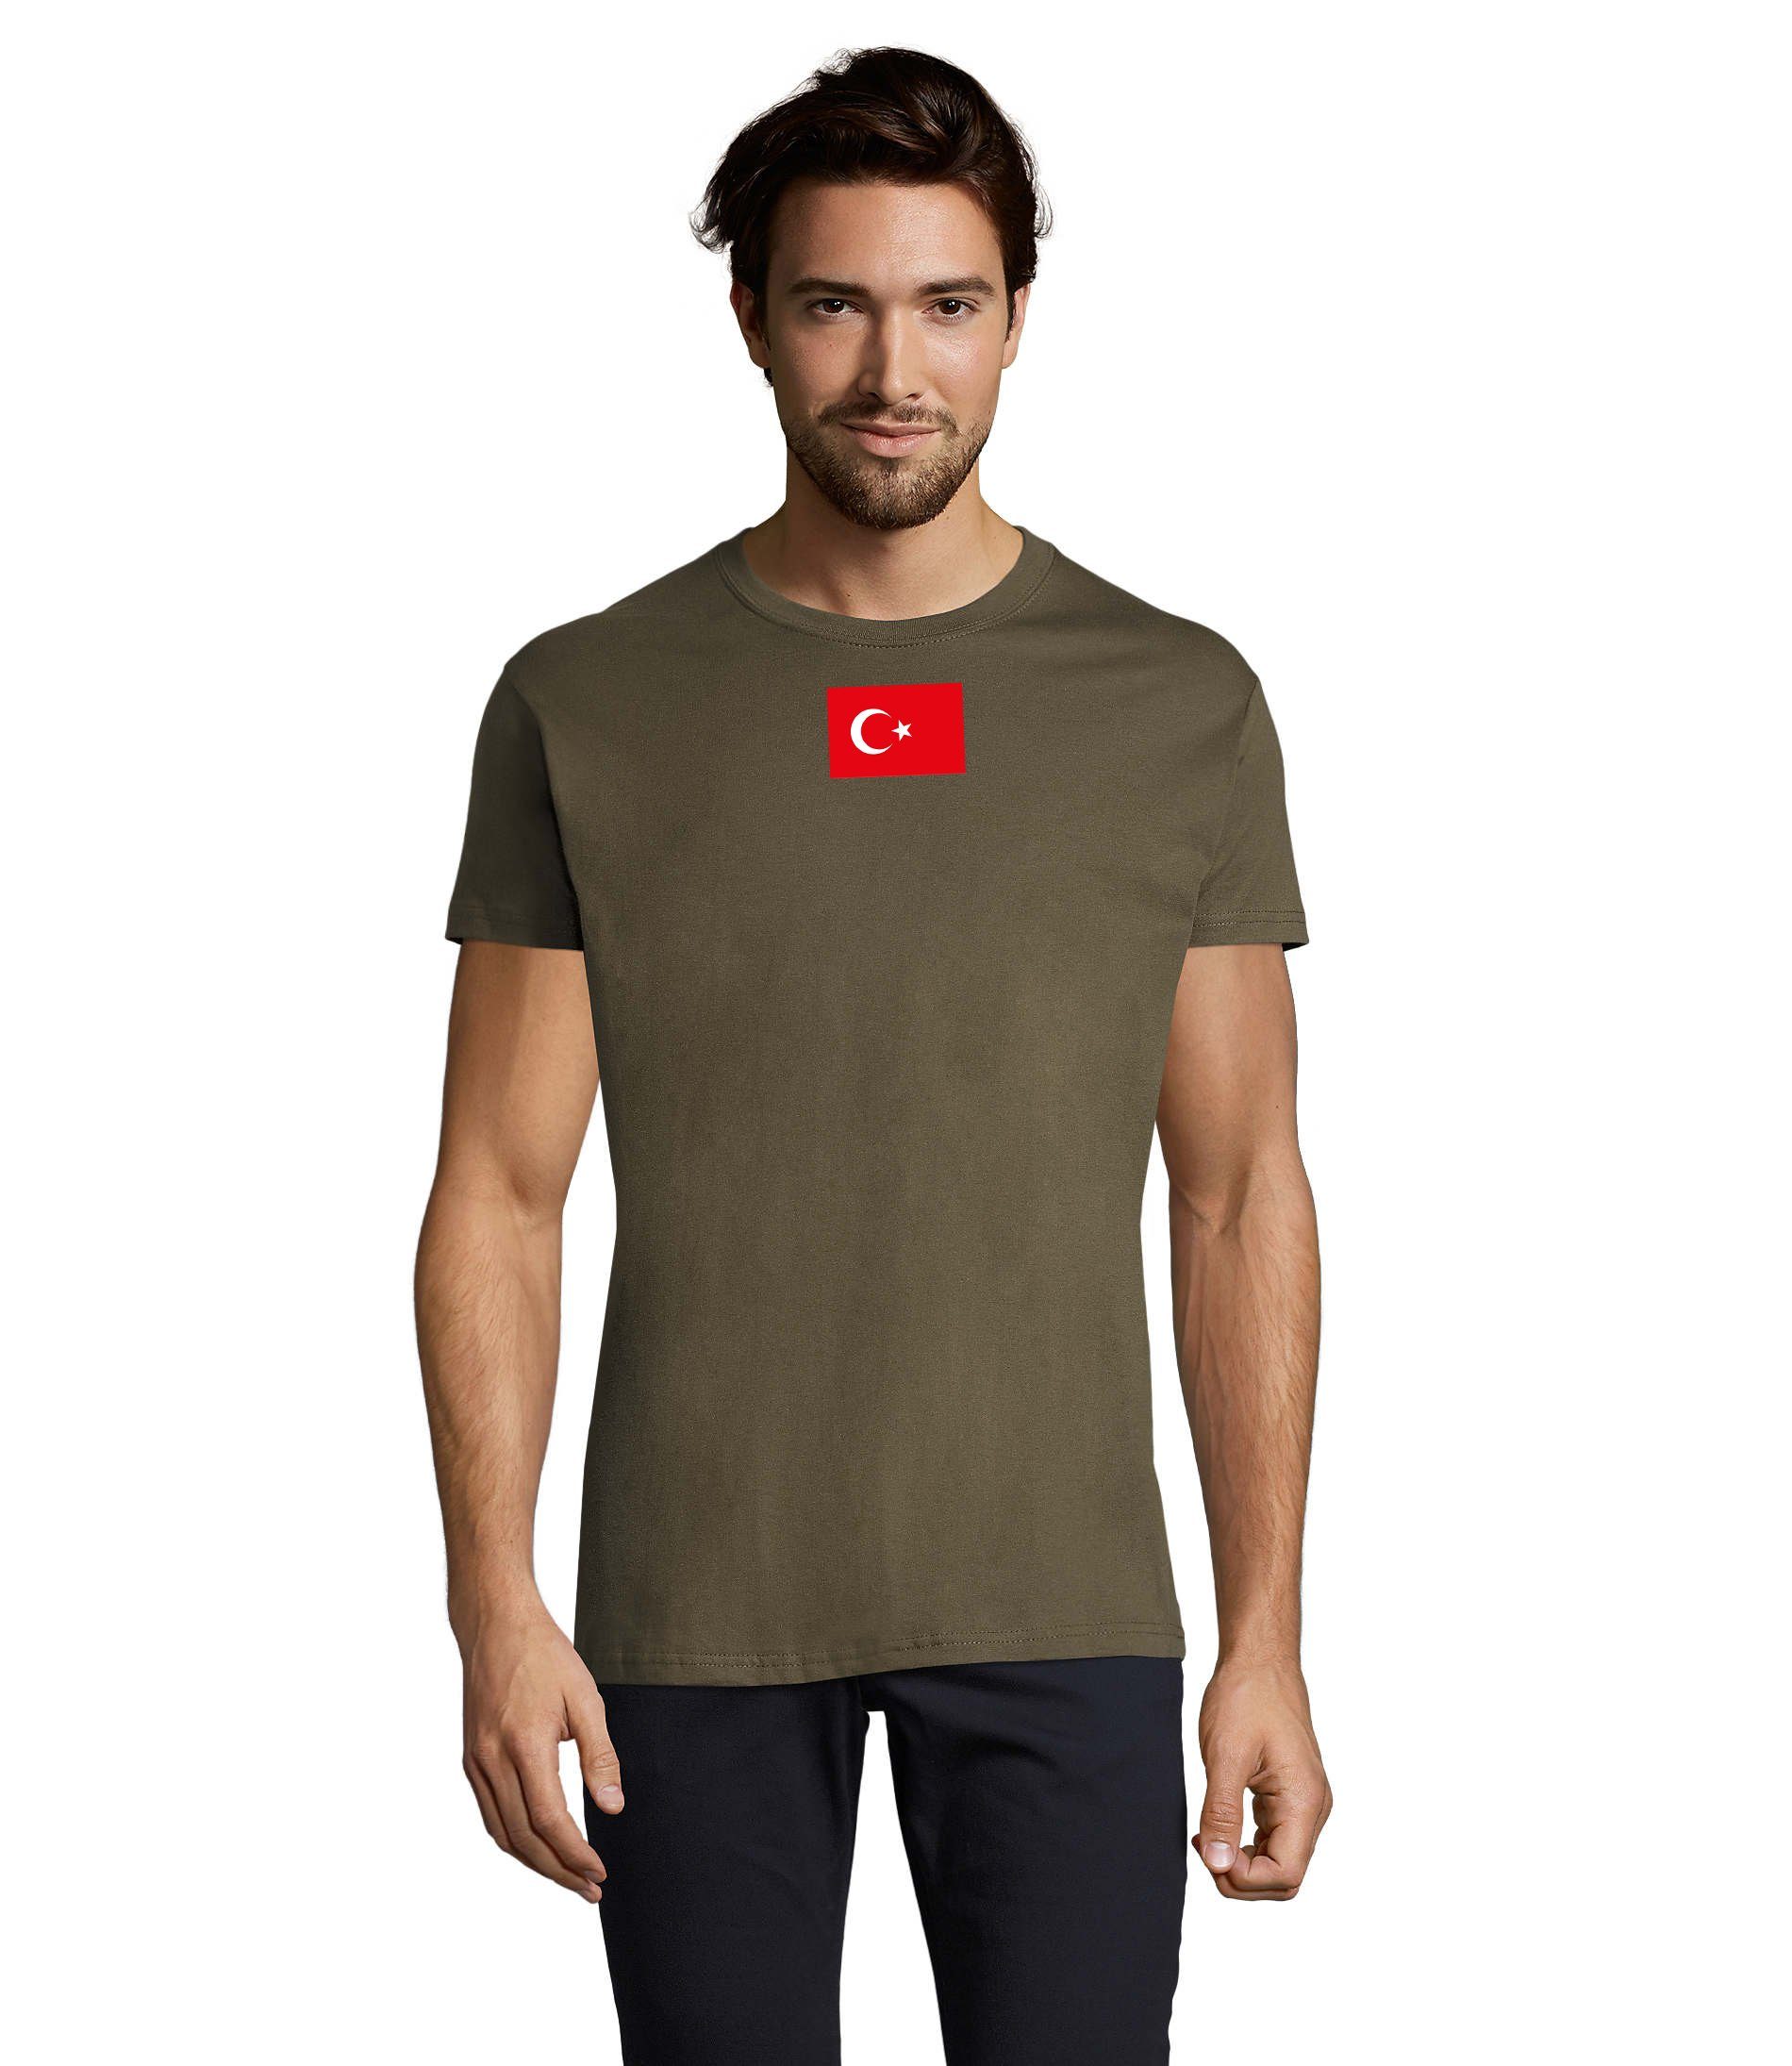 Blondie & Brownie T-Shirt Herren Türkei Turkey Ukraine USA Army Armee Nato Peace Air Force